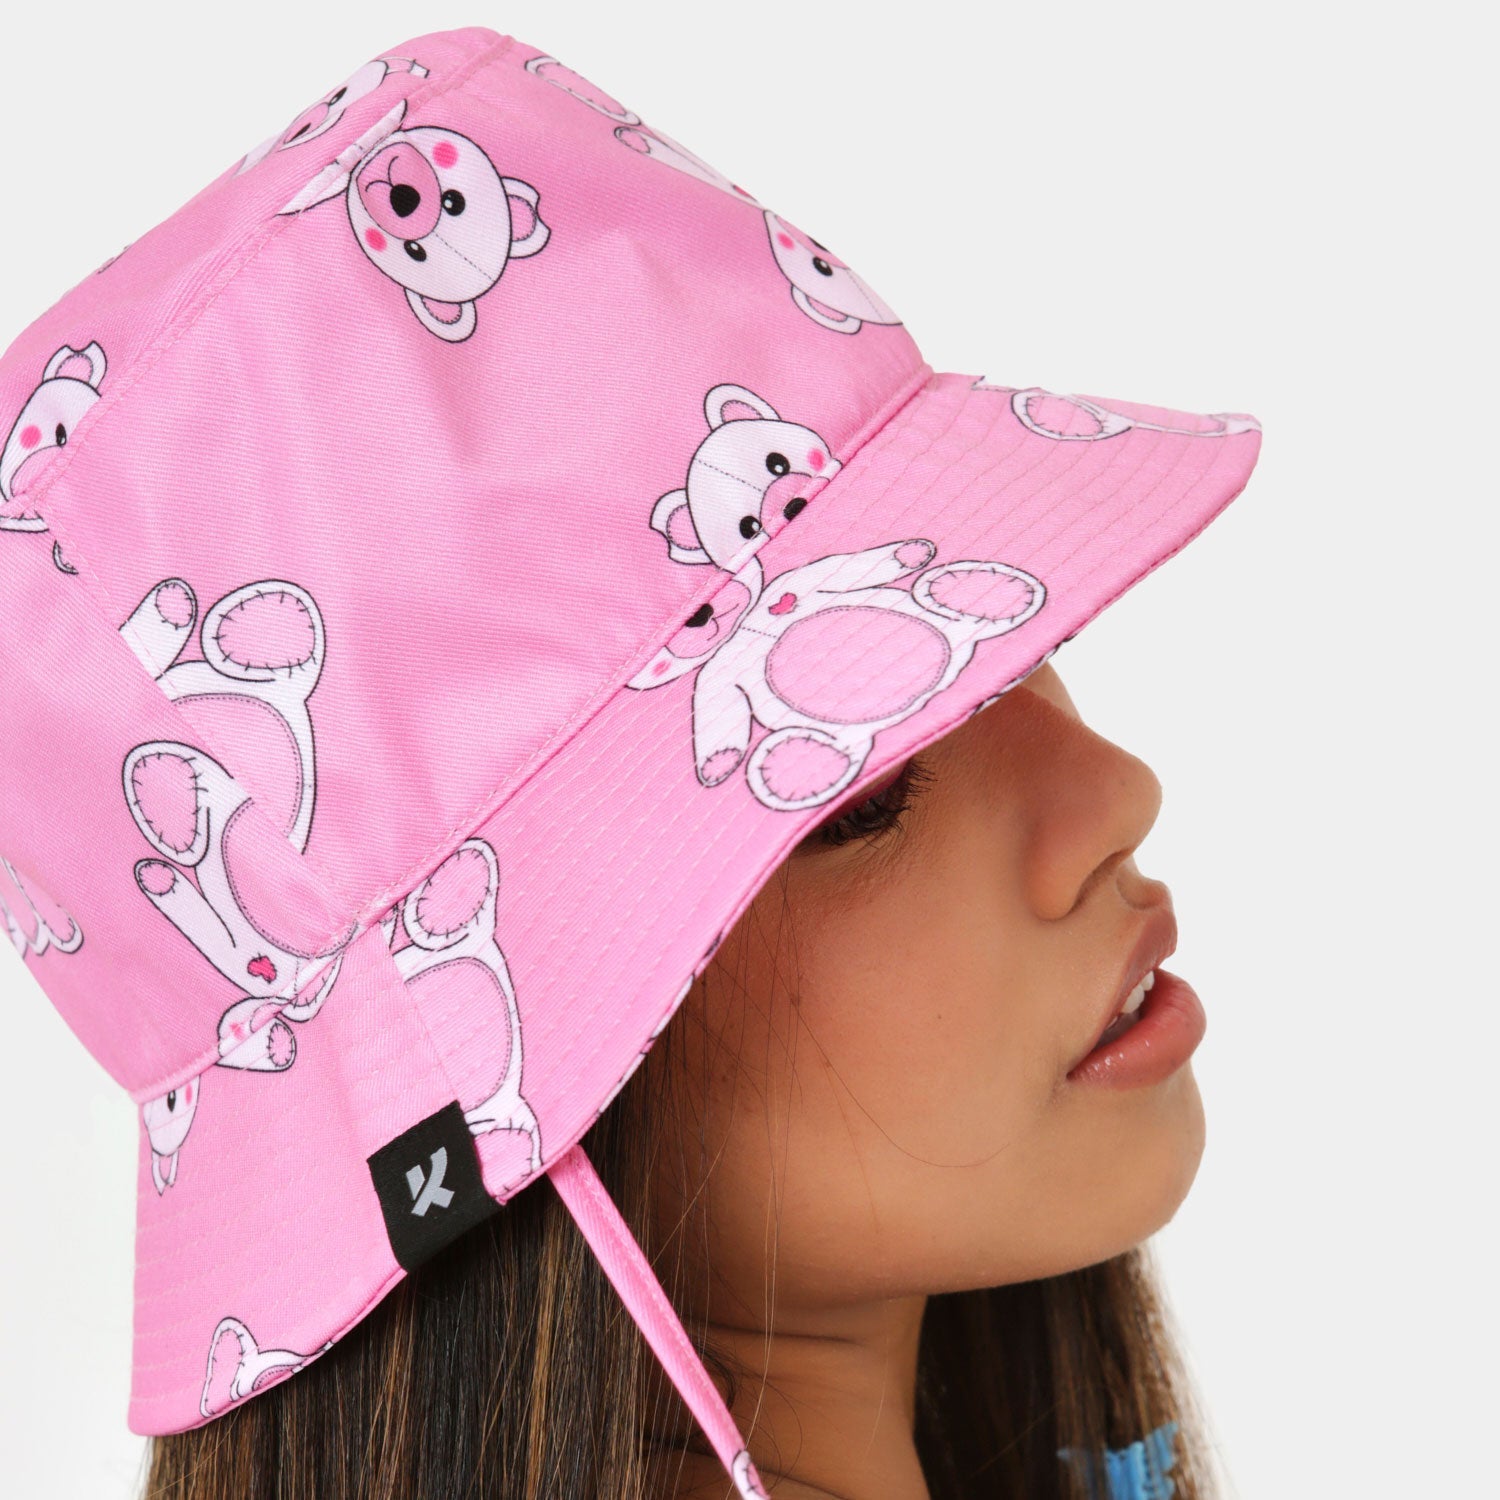 Lotso Love Pink Bonnet Hat - Accessories - KOI Footwear - Pink - Model Side View